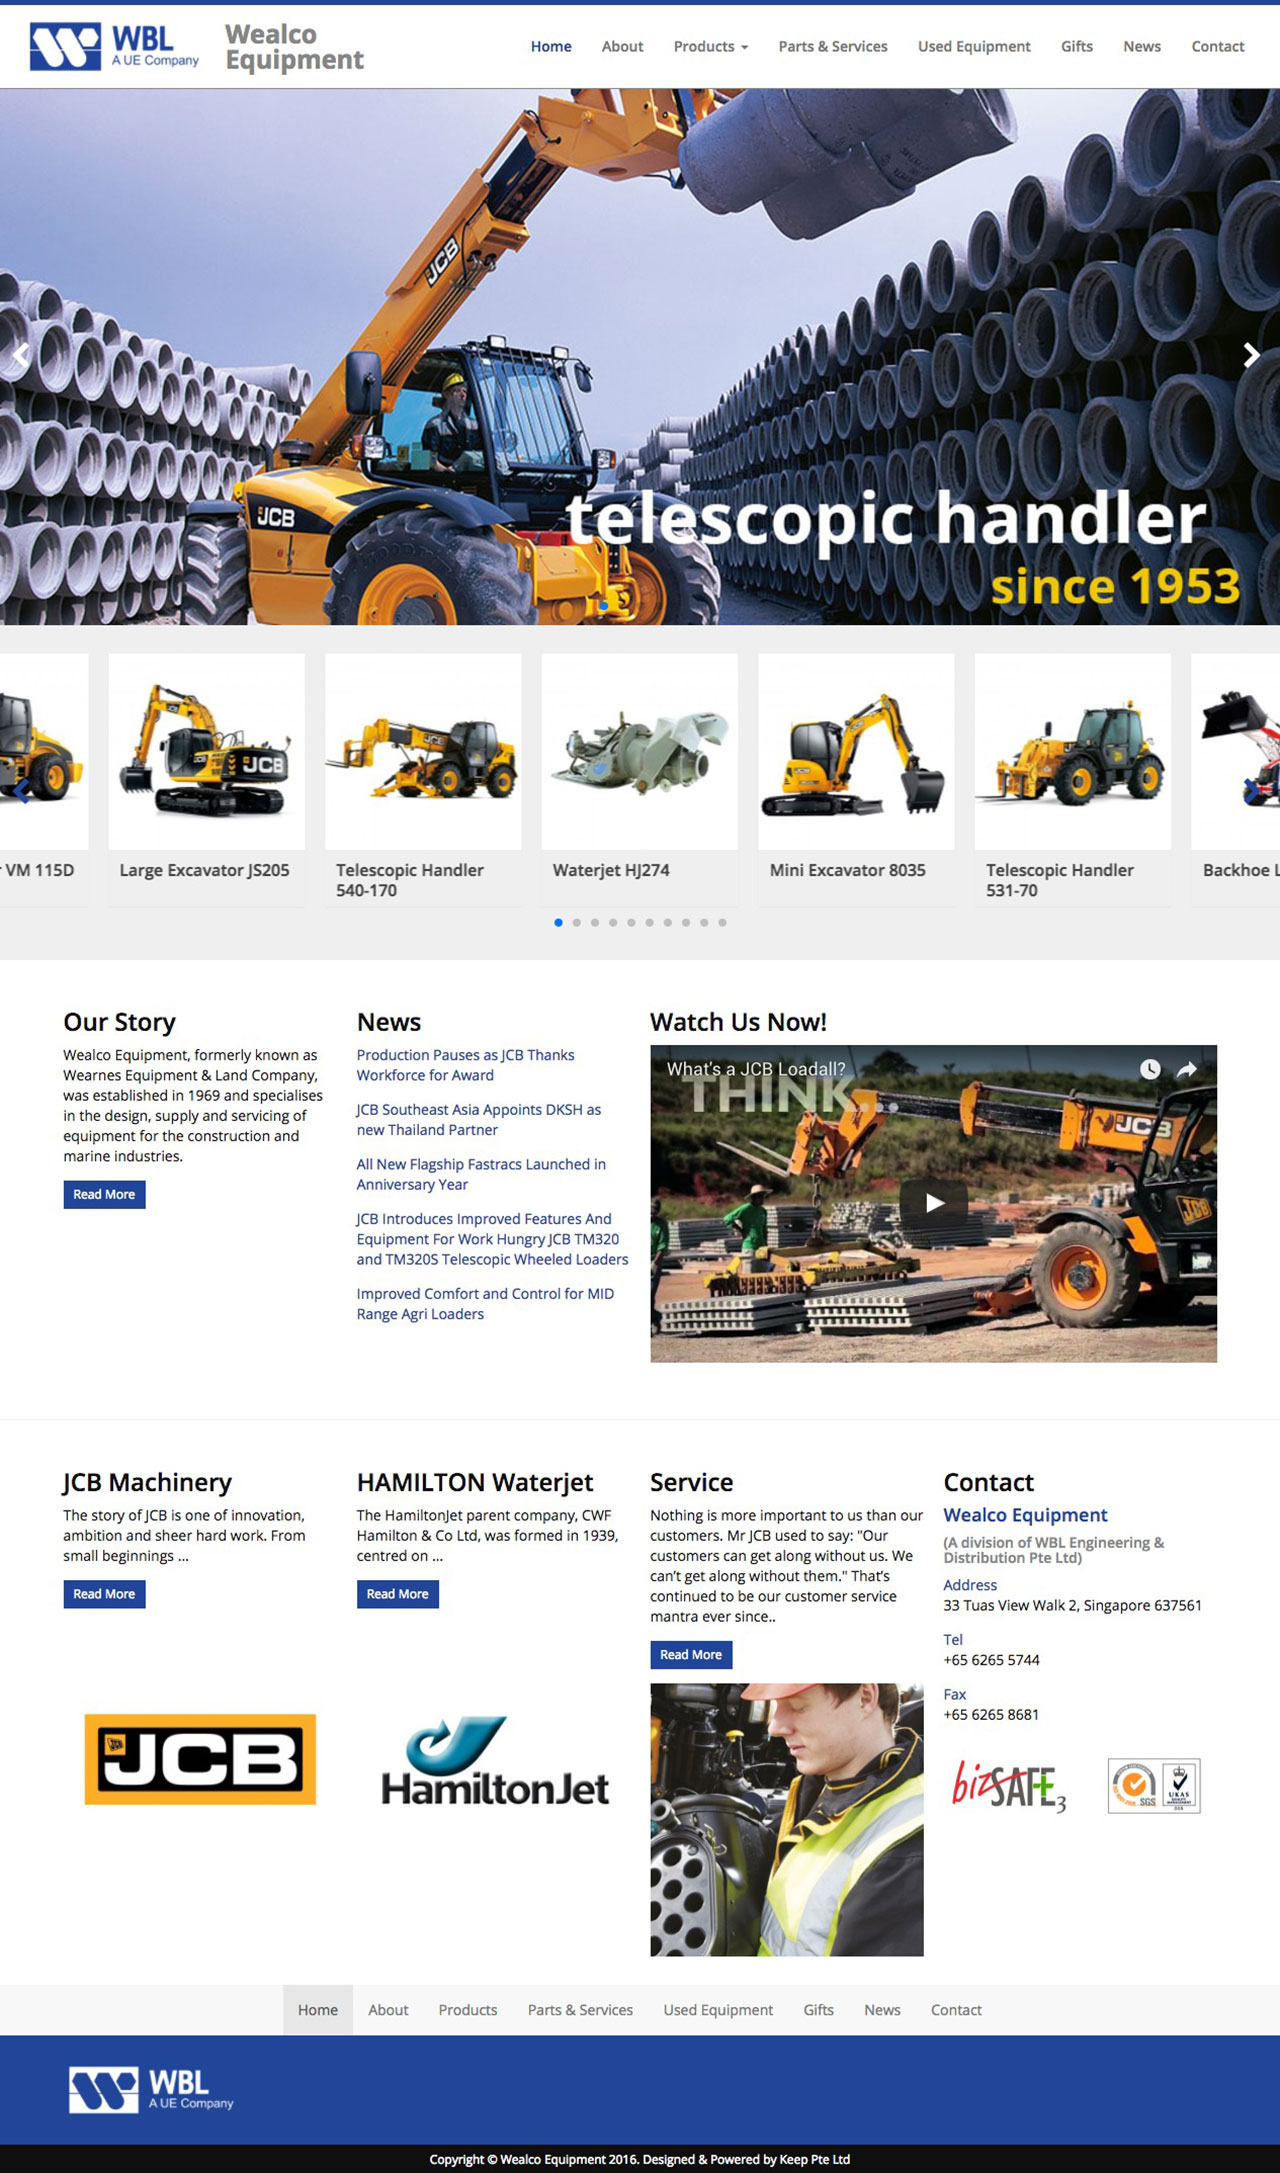 Wealco Equipment website homepage on screen